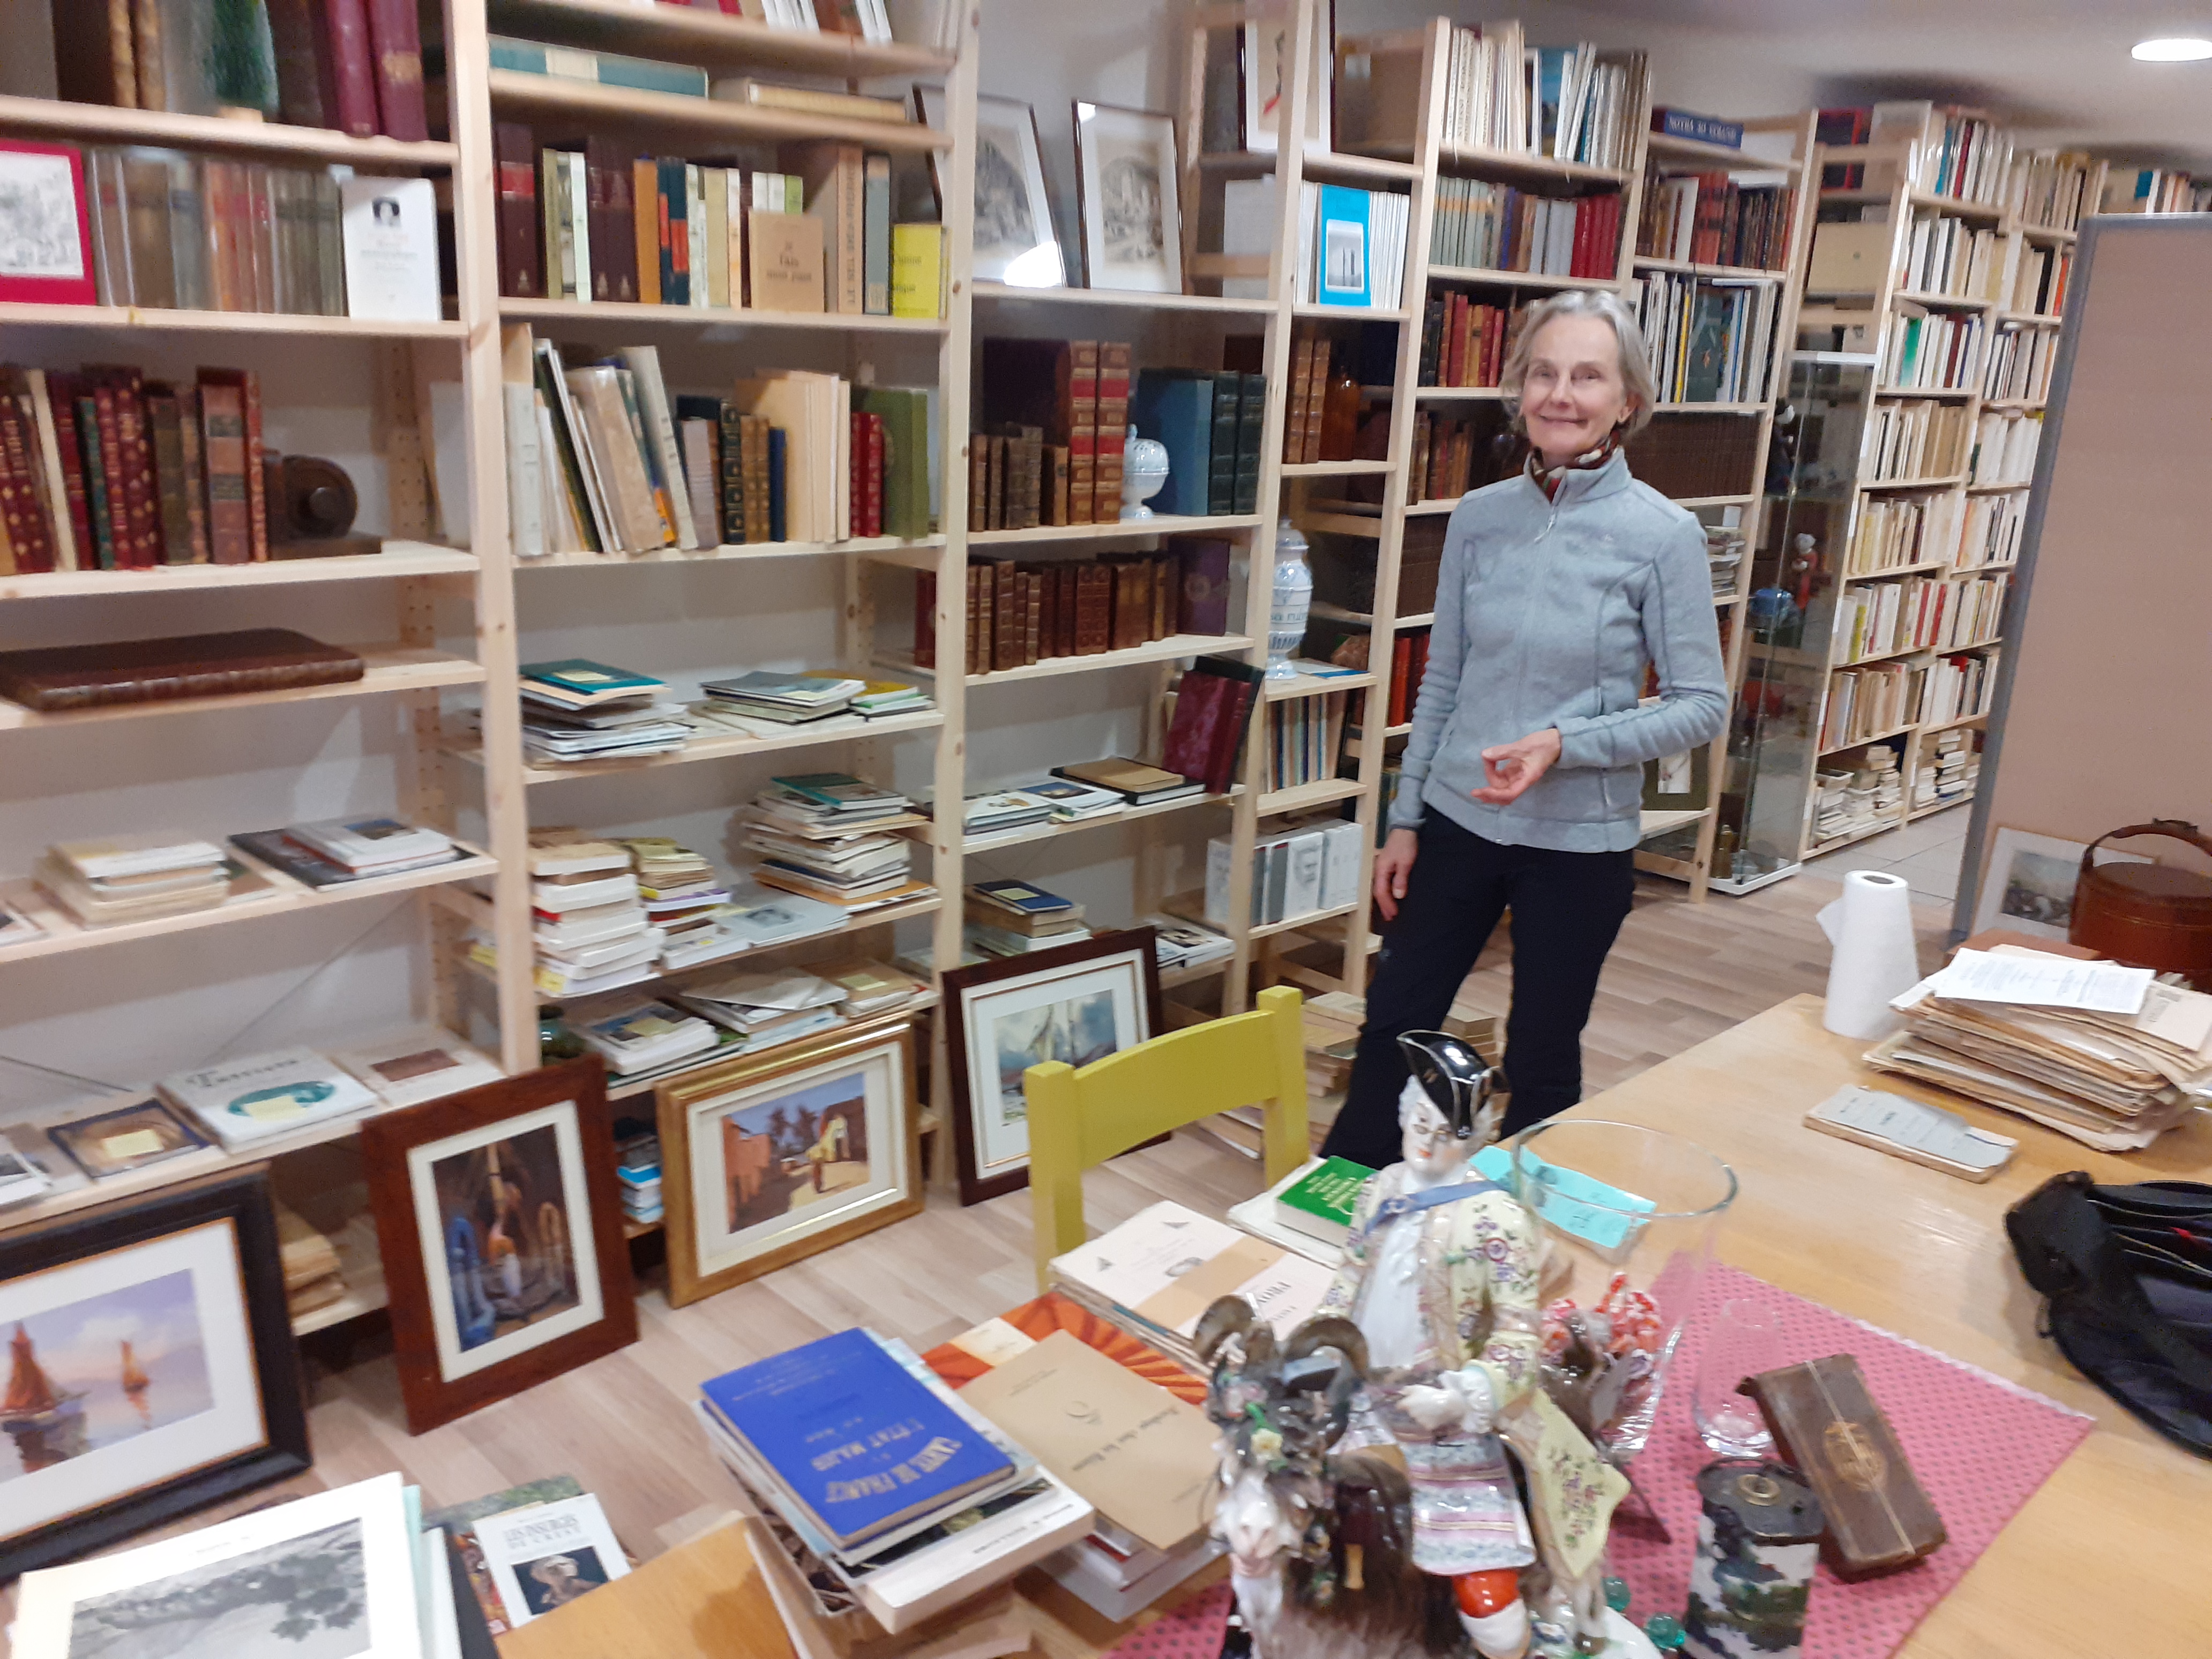 La librairie Résurgam à Sisteron : c’est voyage au bout des livres